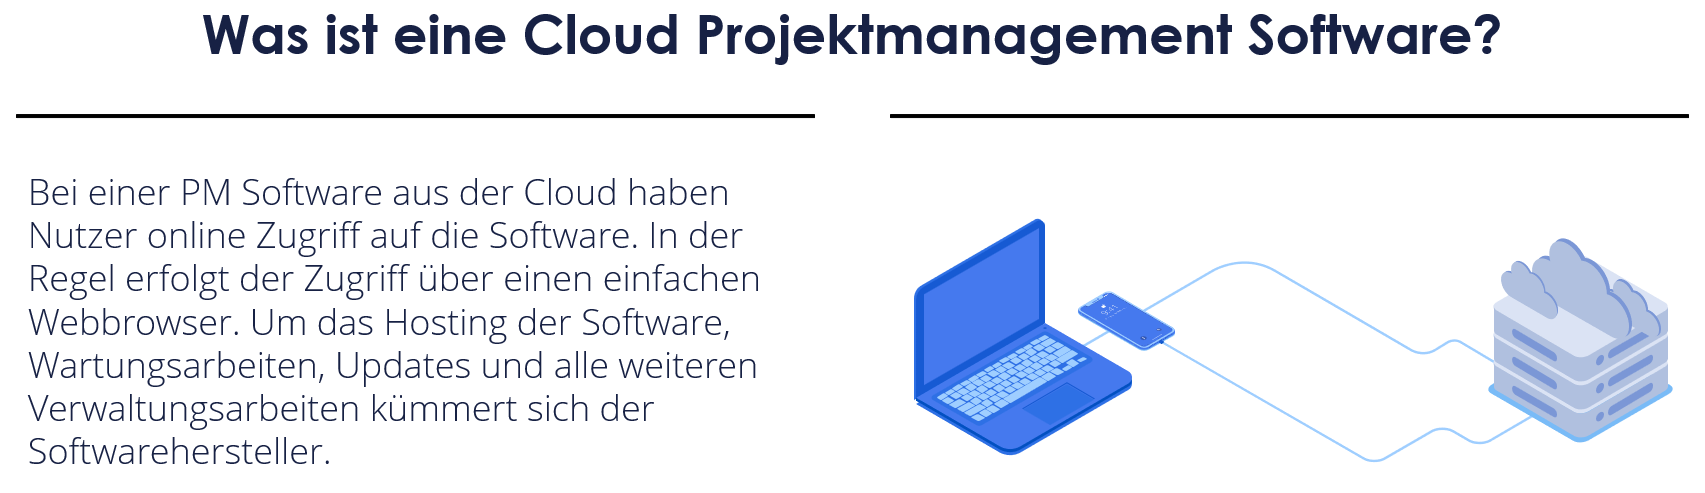 Darstellung - Was ist eine Projektmanagement Software aus der Cloud?